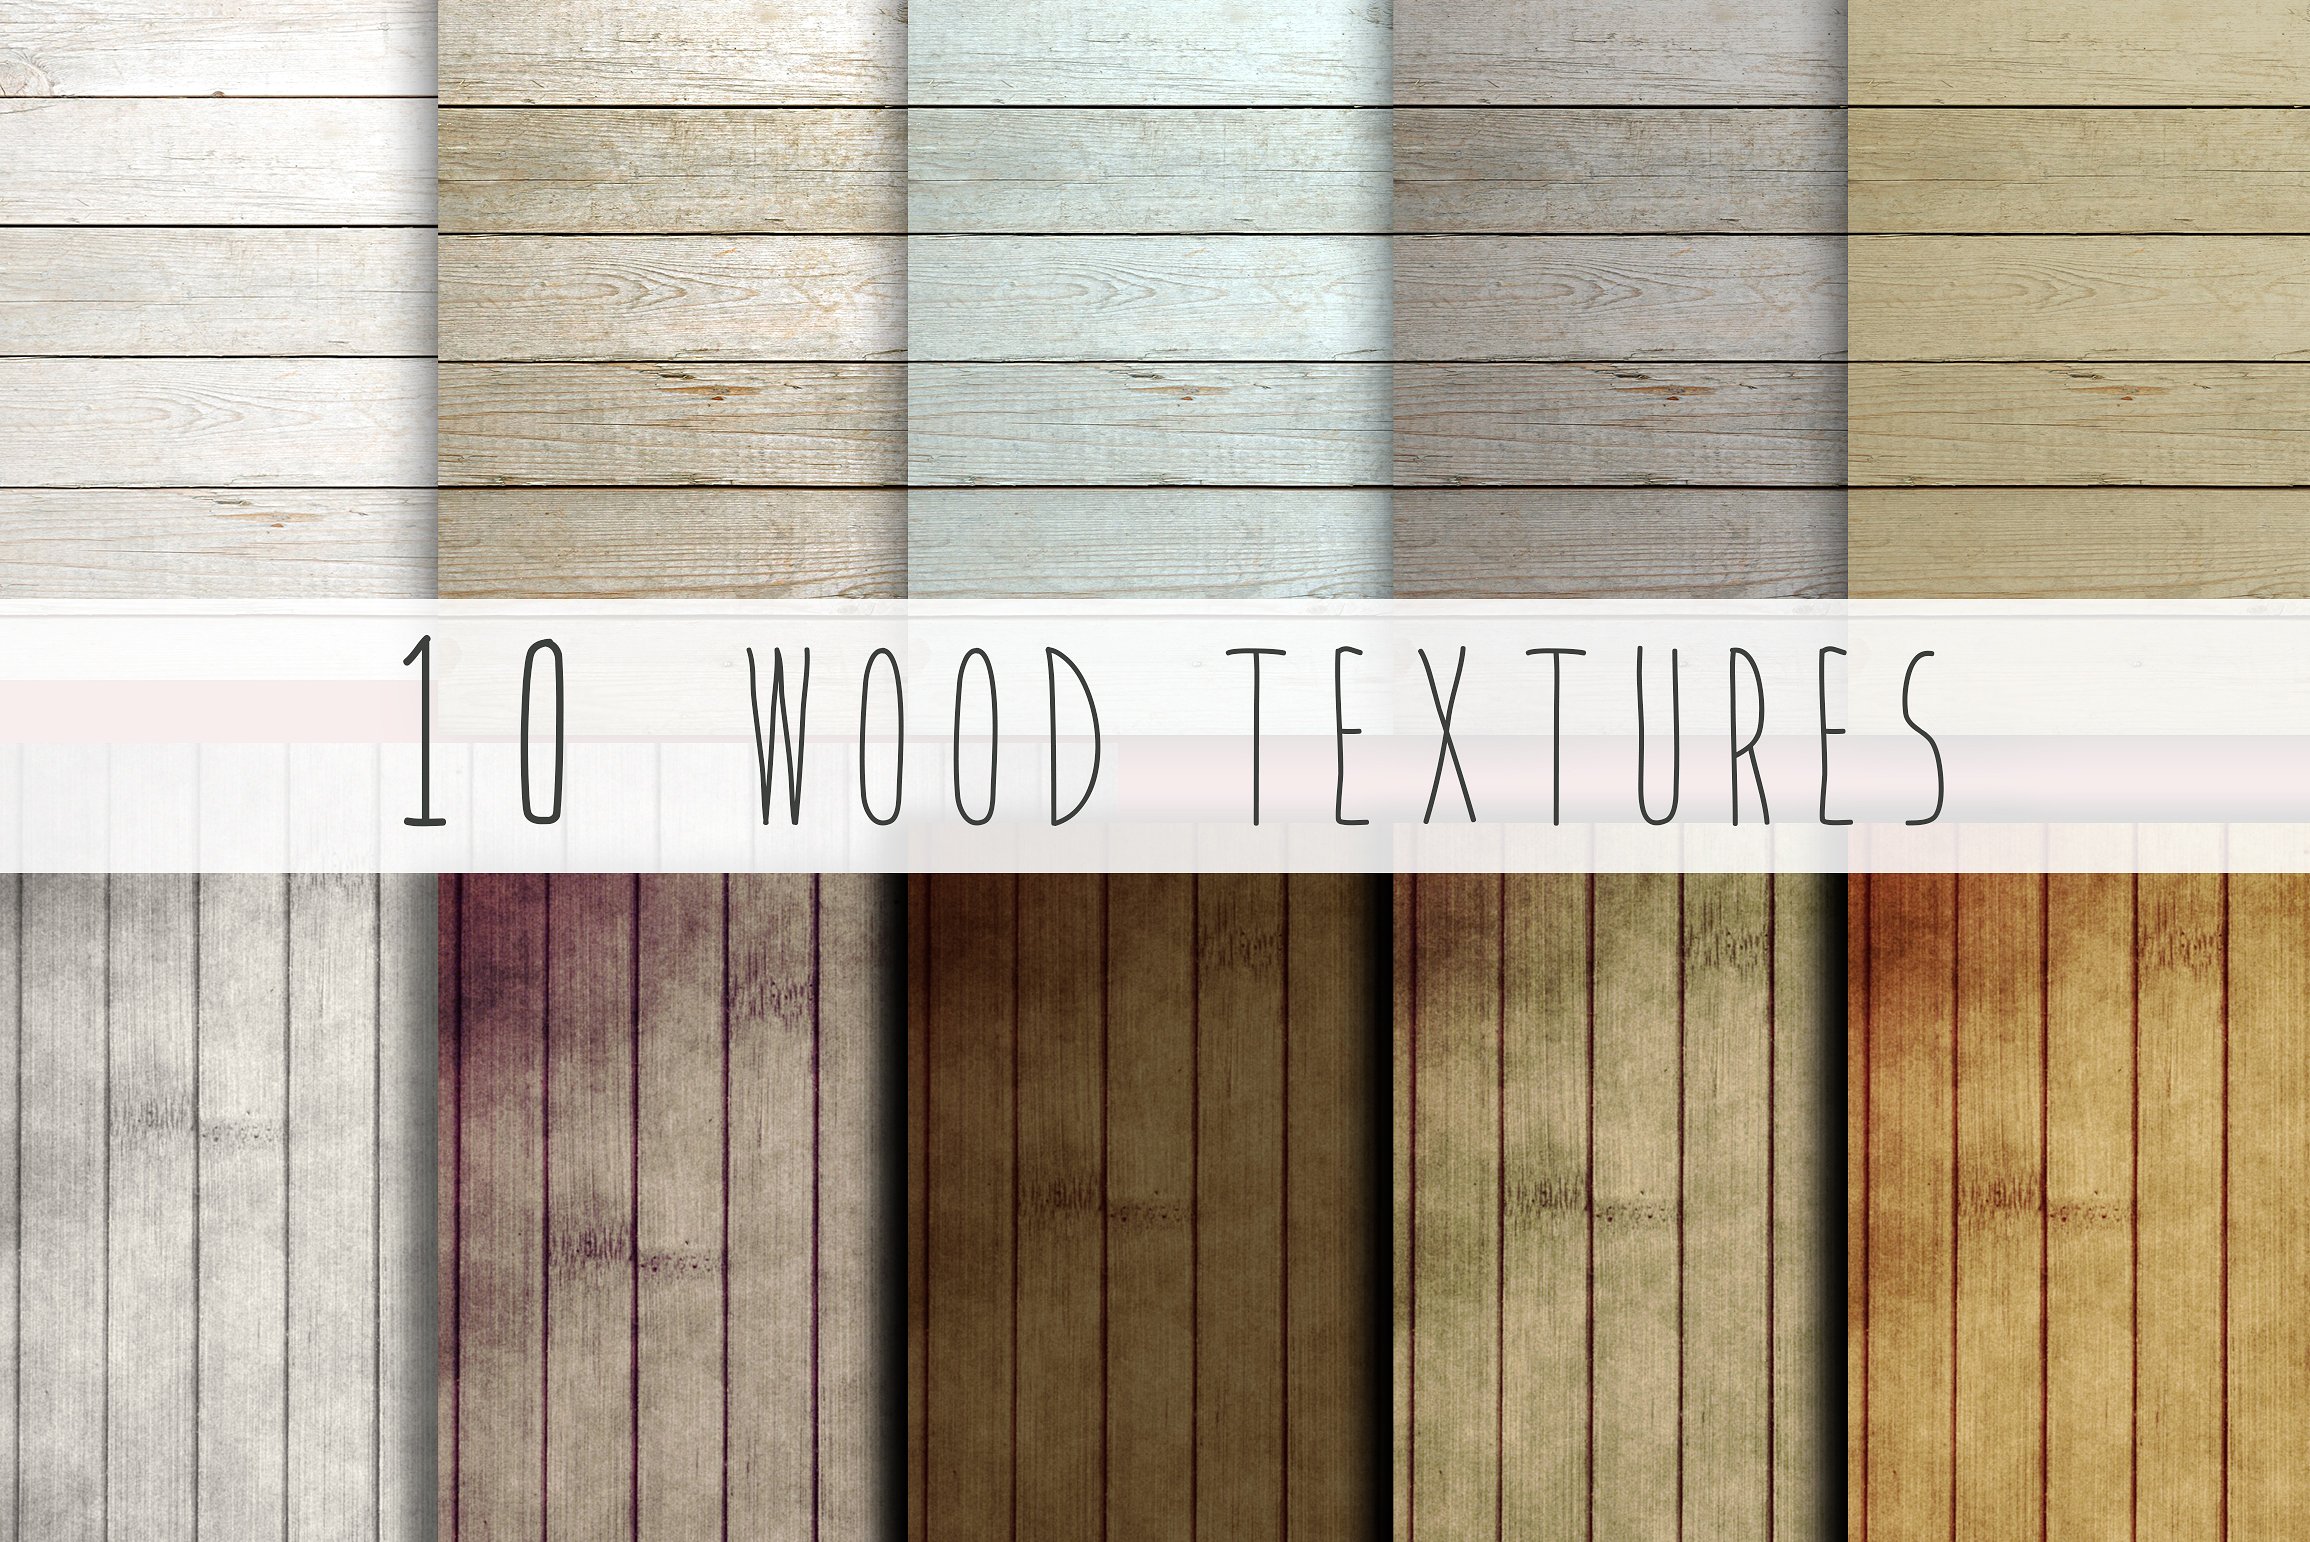 木板纹理设计素材10 wood textures #1062